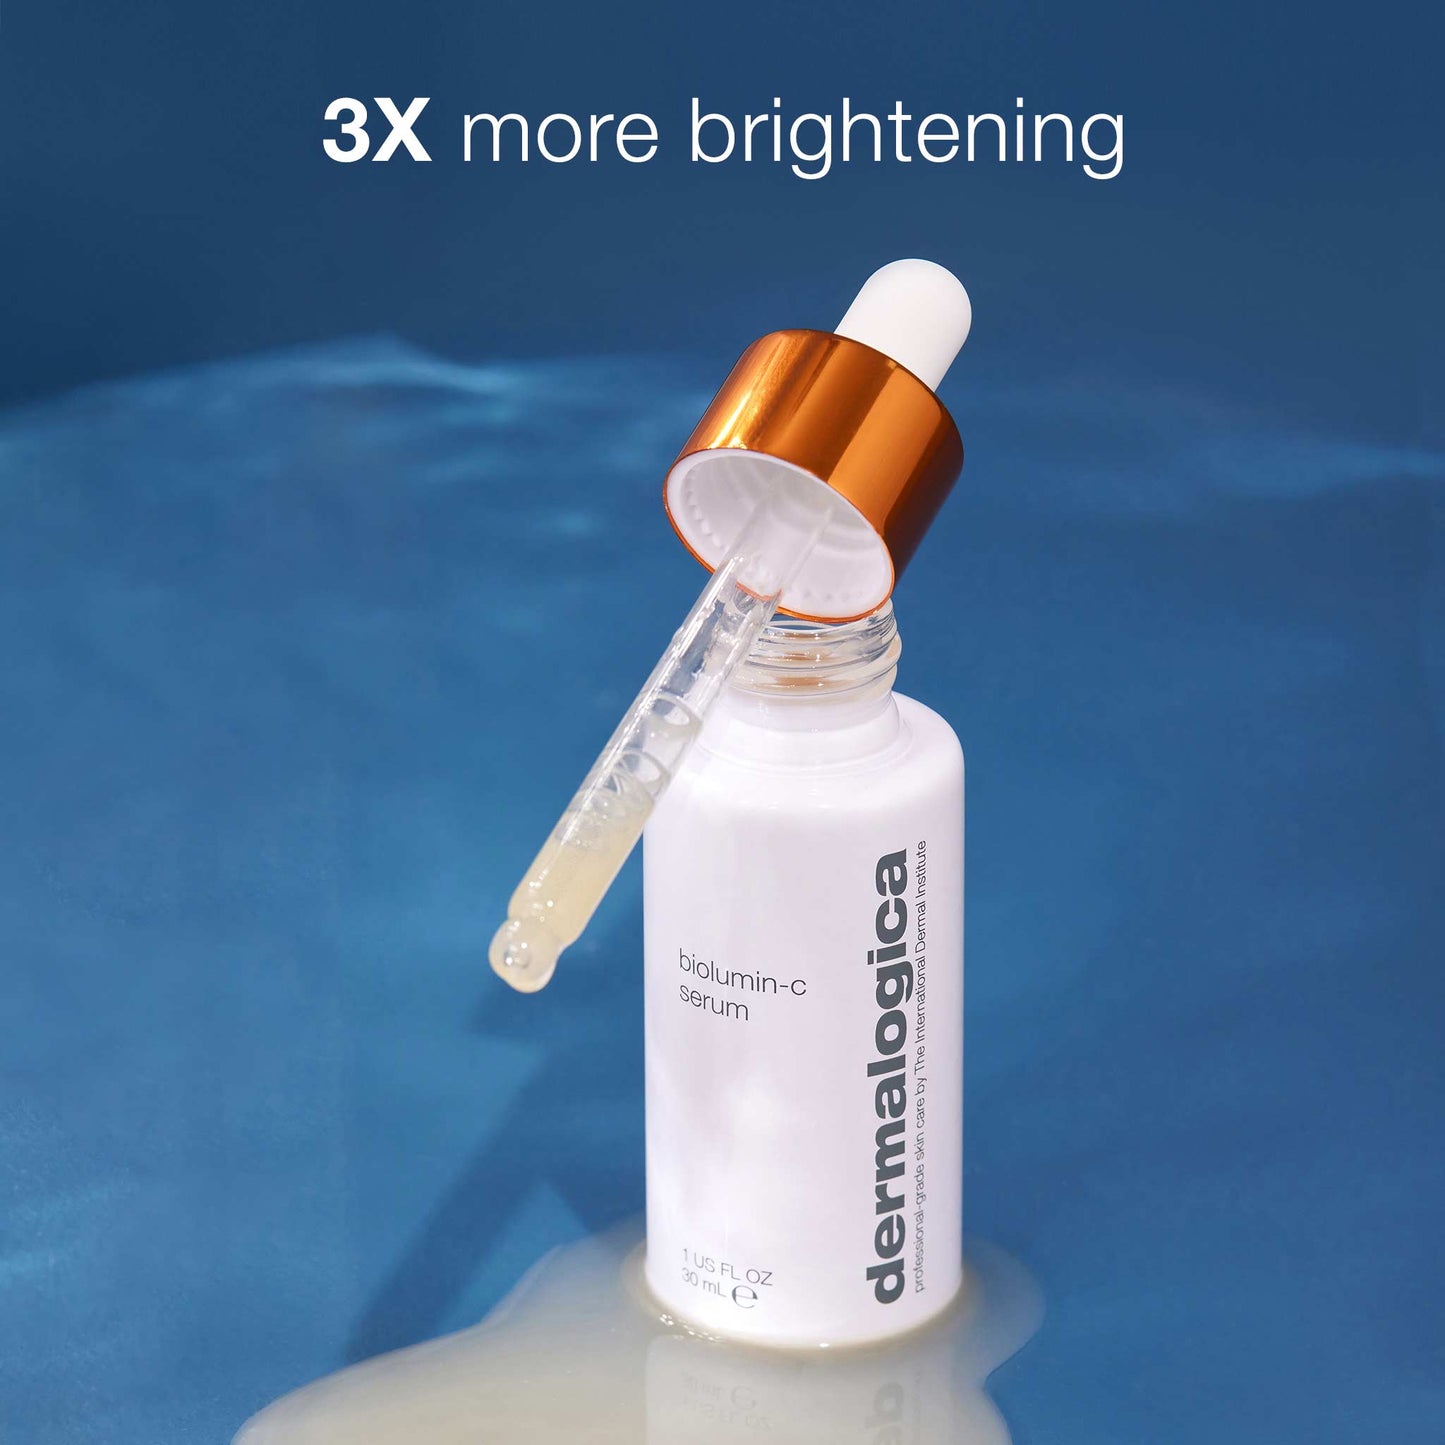 3x more brightening biolumin-c serum